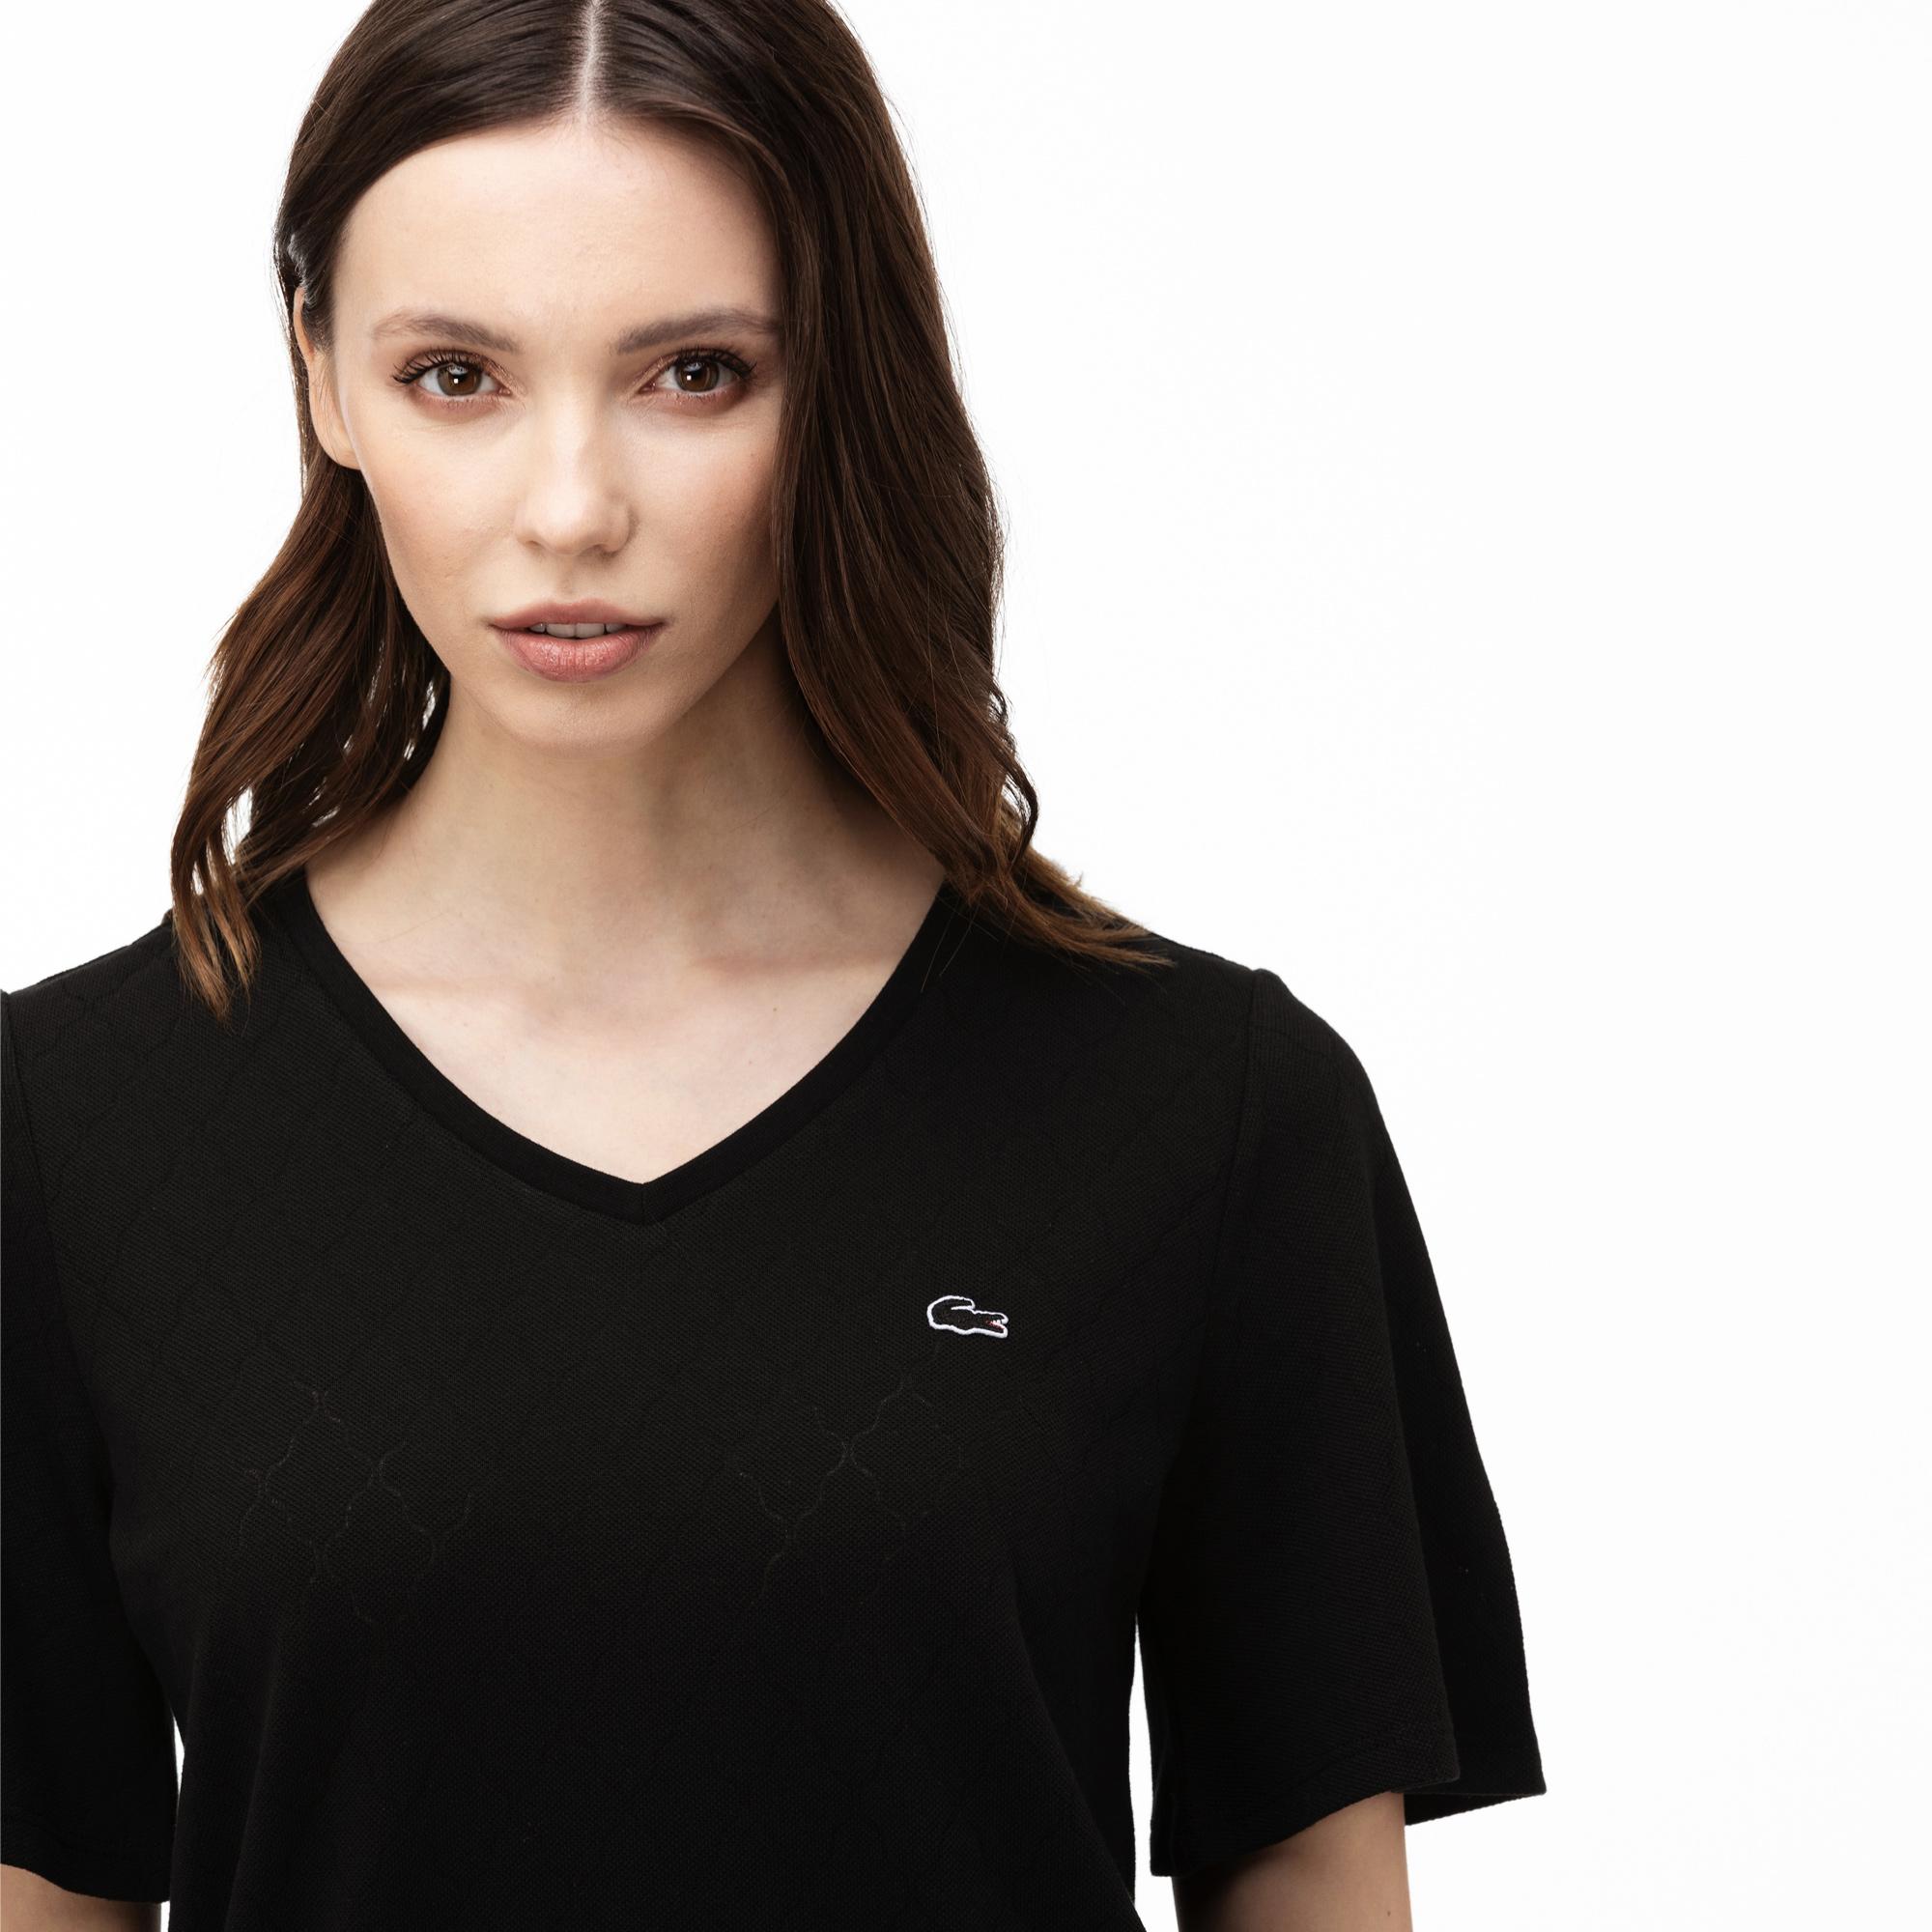 Lacoste Kadın V Yaka Desenli Siyah T-Shirt. 2